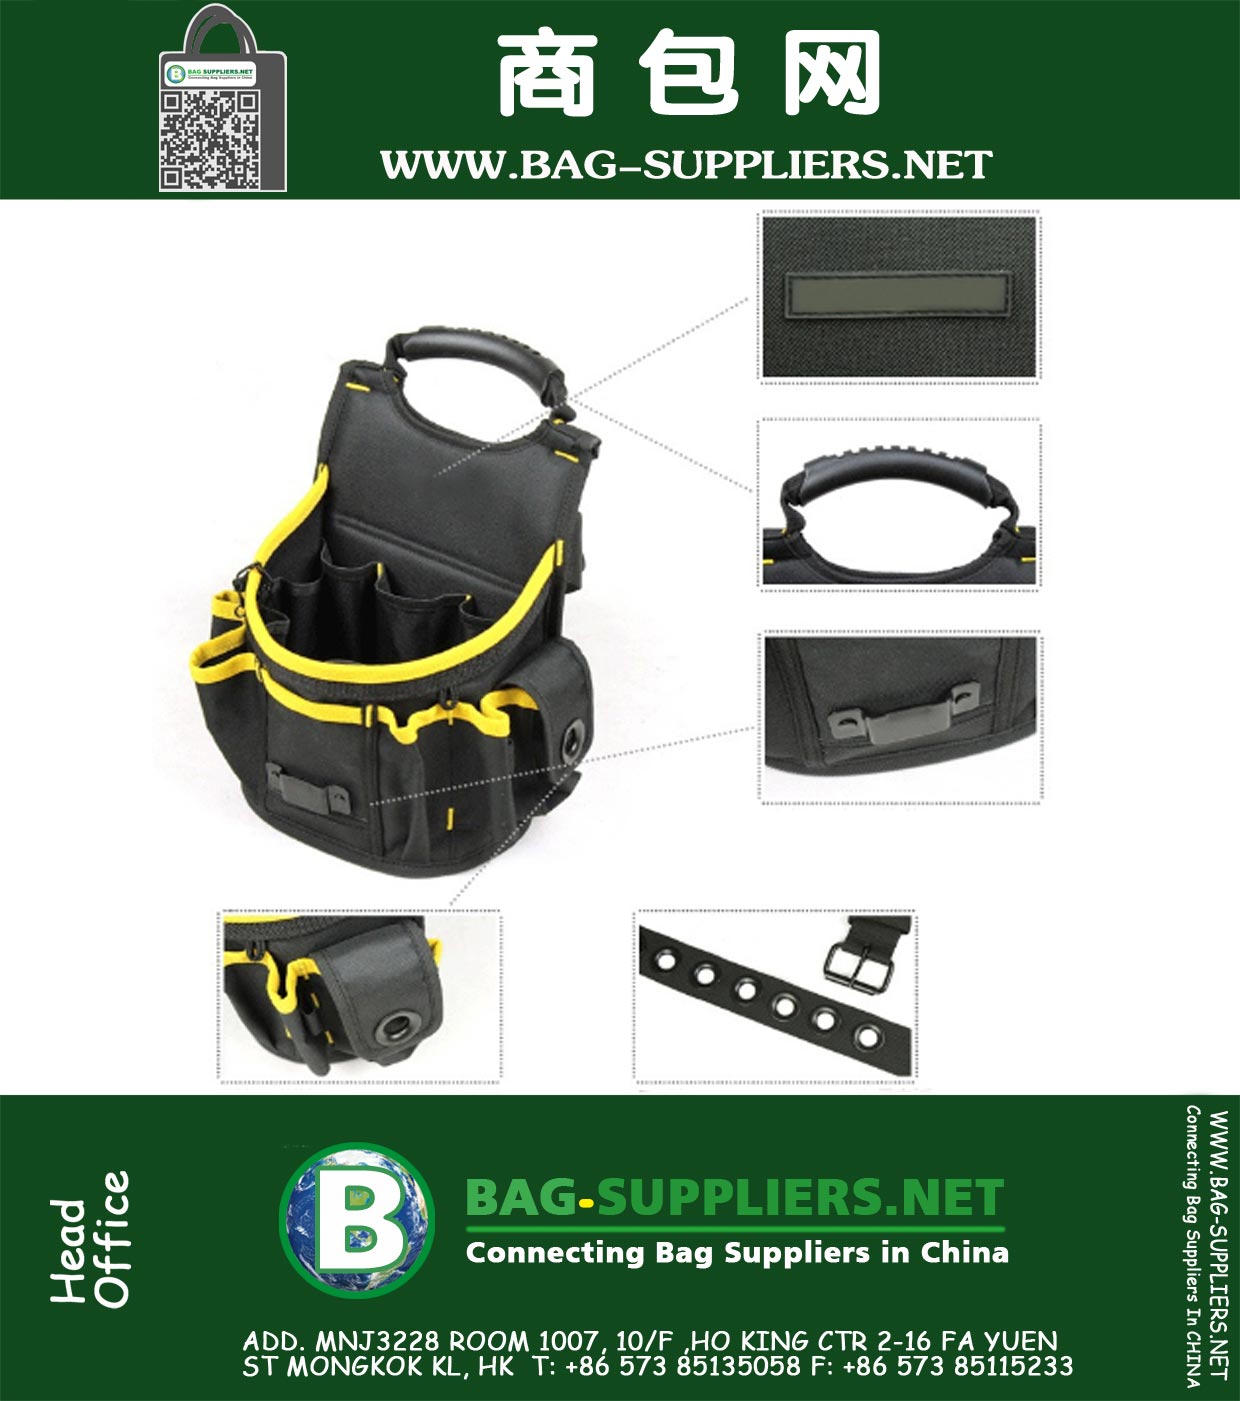 Multifonction seau taille Portable kits poches d'outils électriques paquet avec ceinture